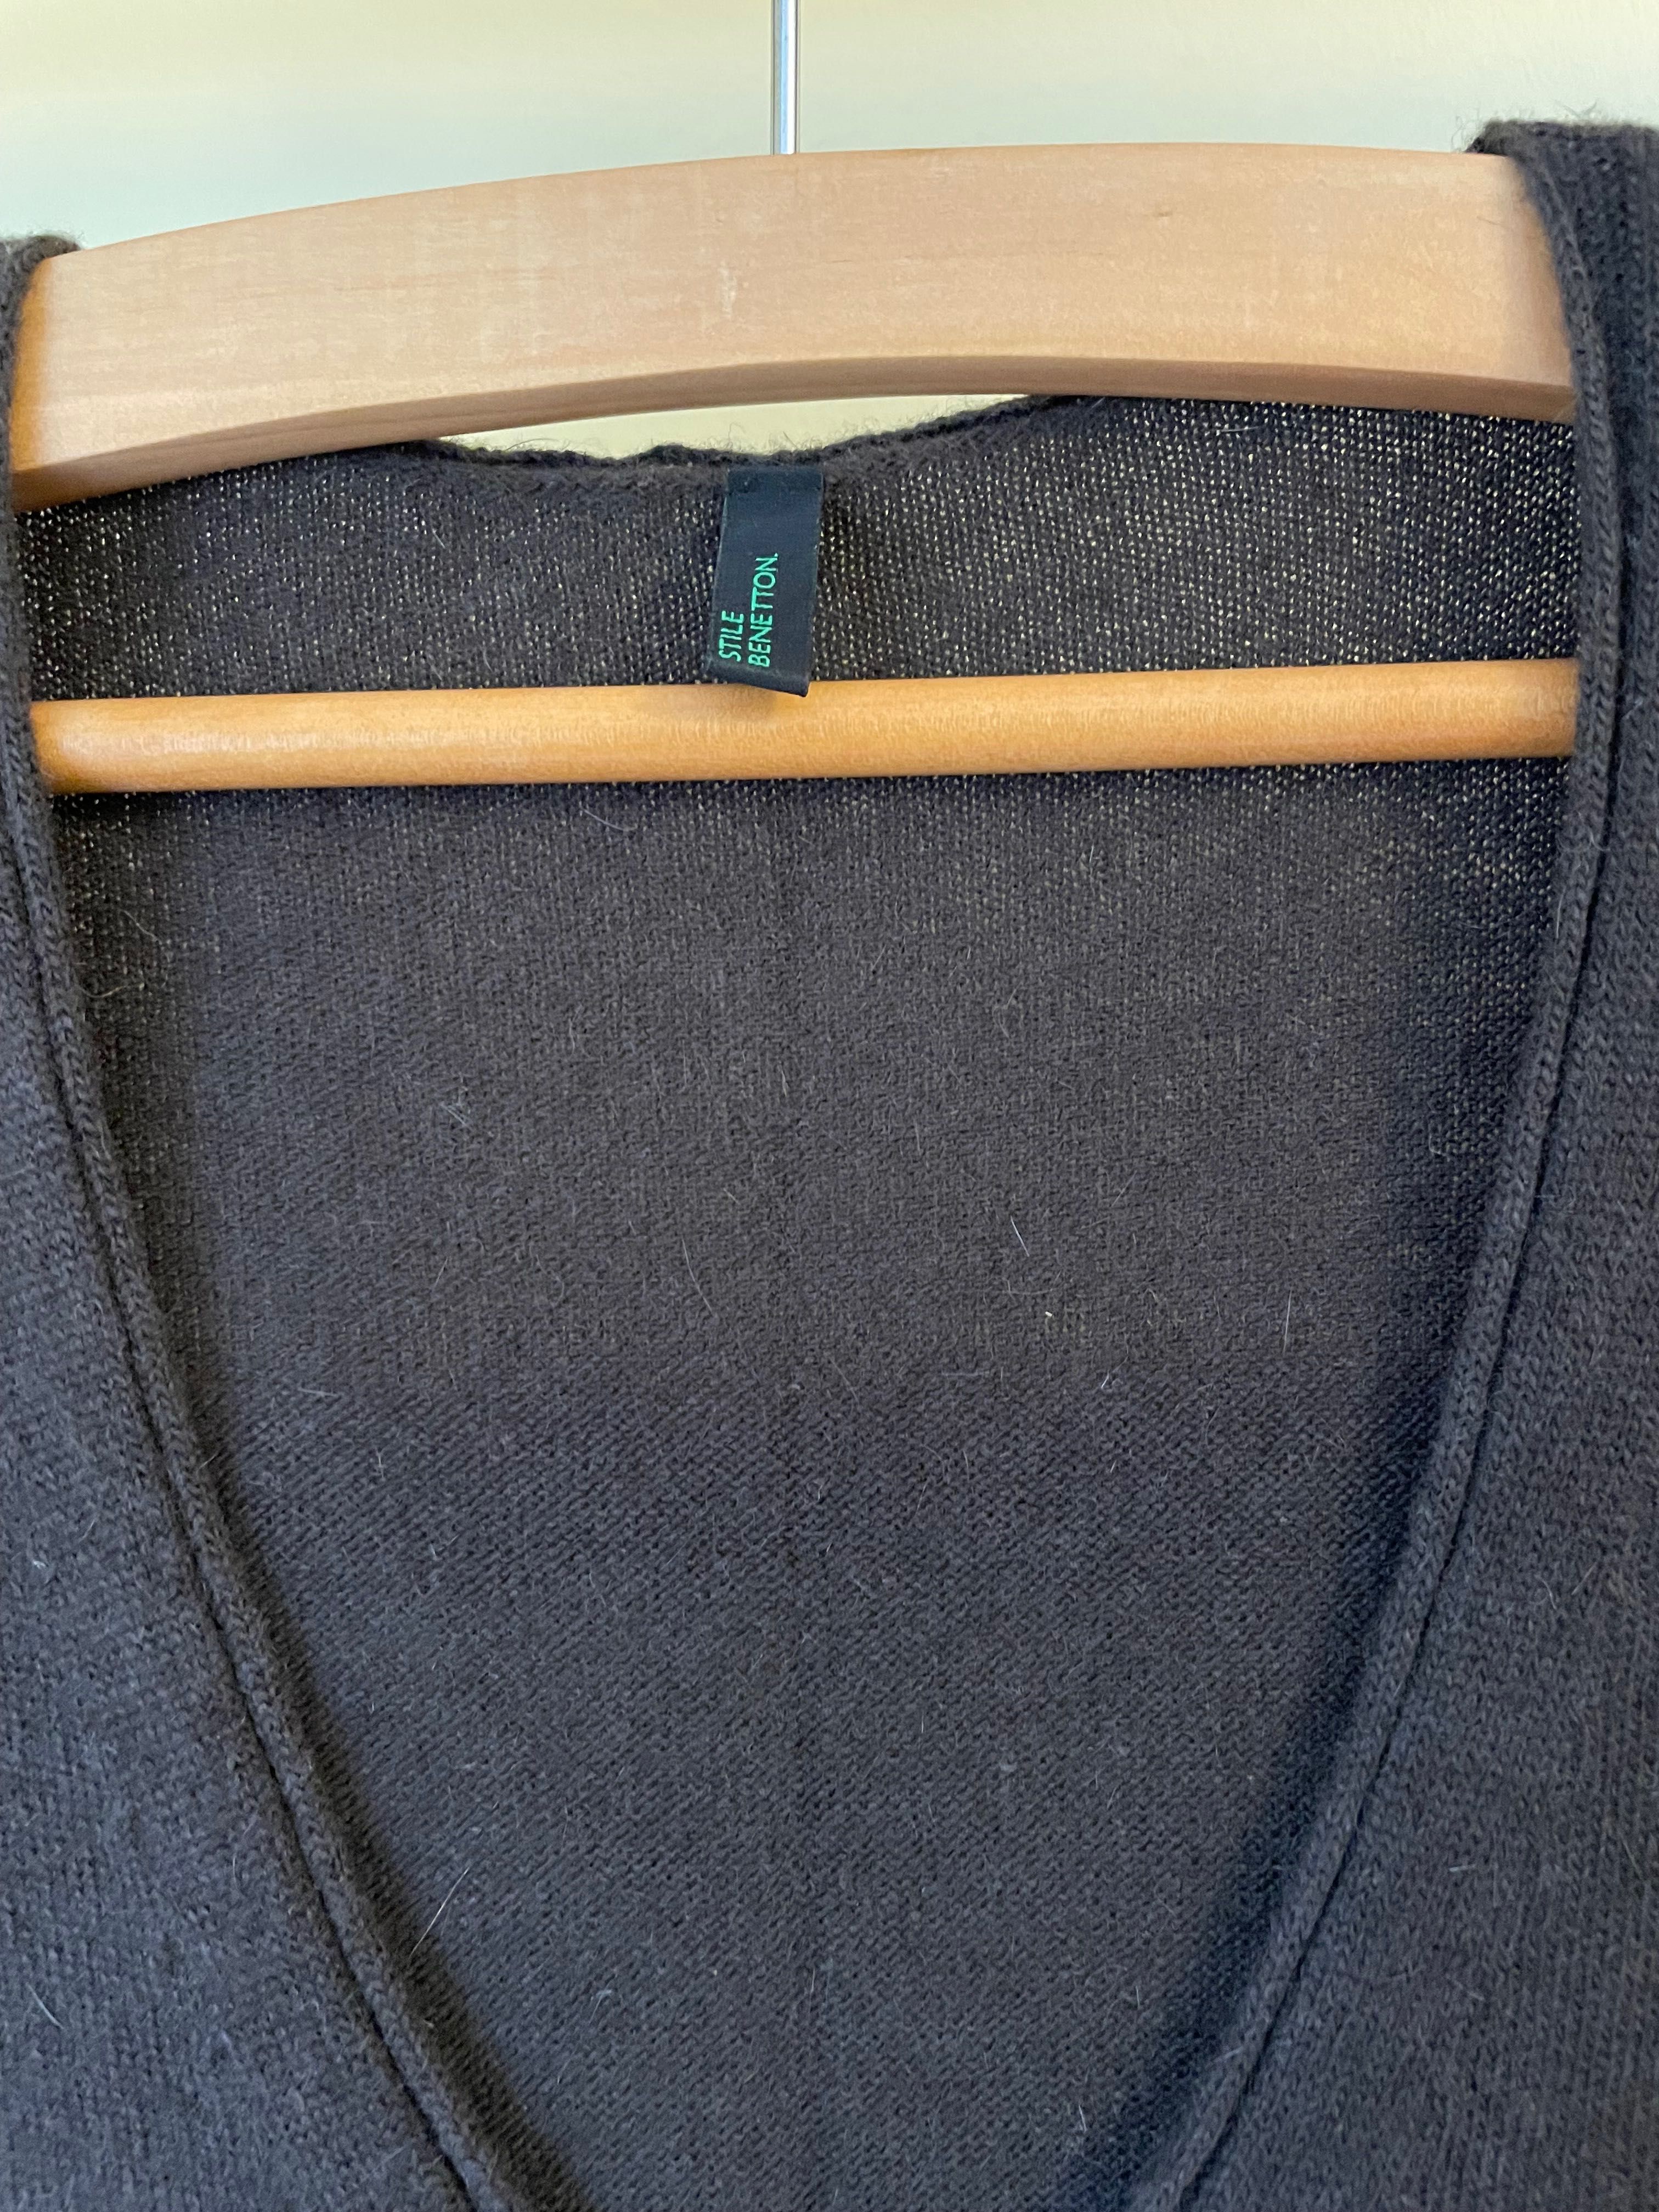 Vestido Benetton lã castanho M / 40